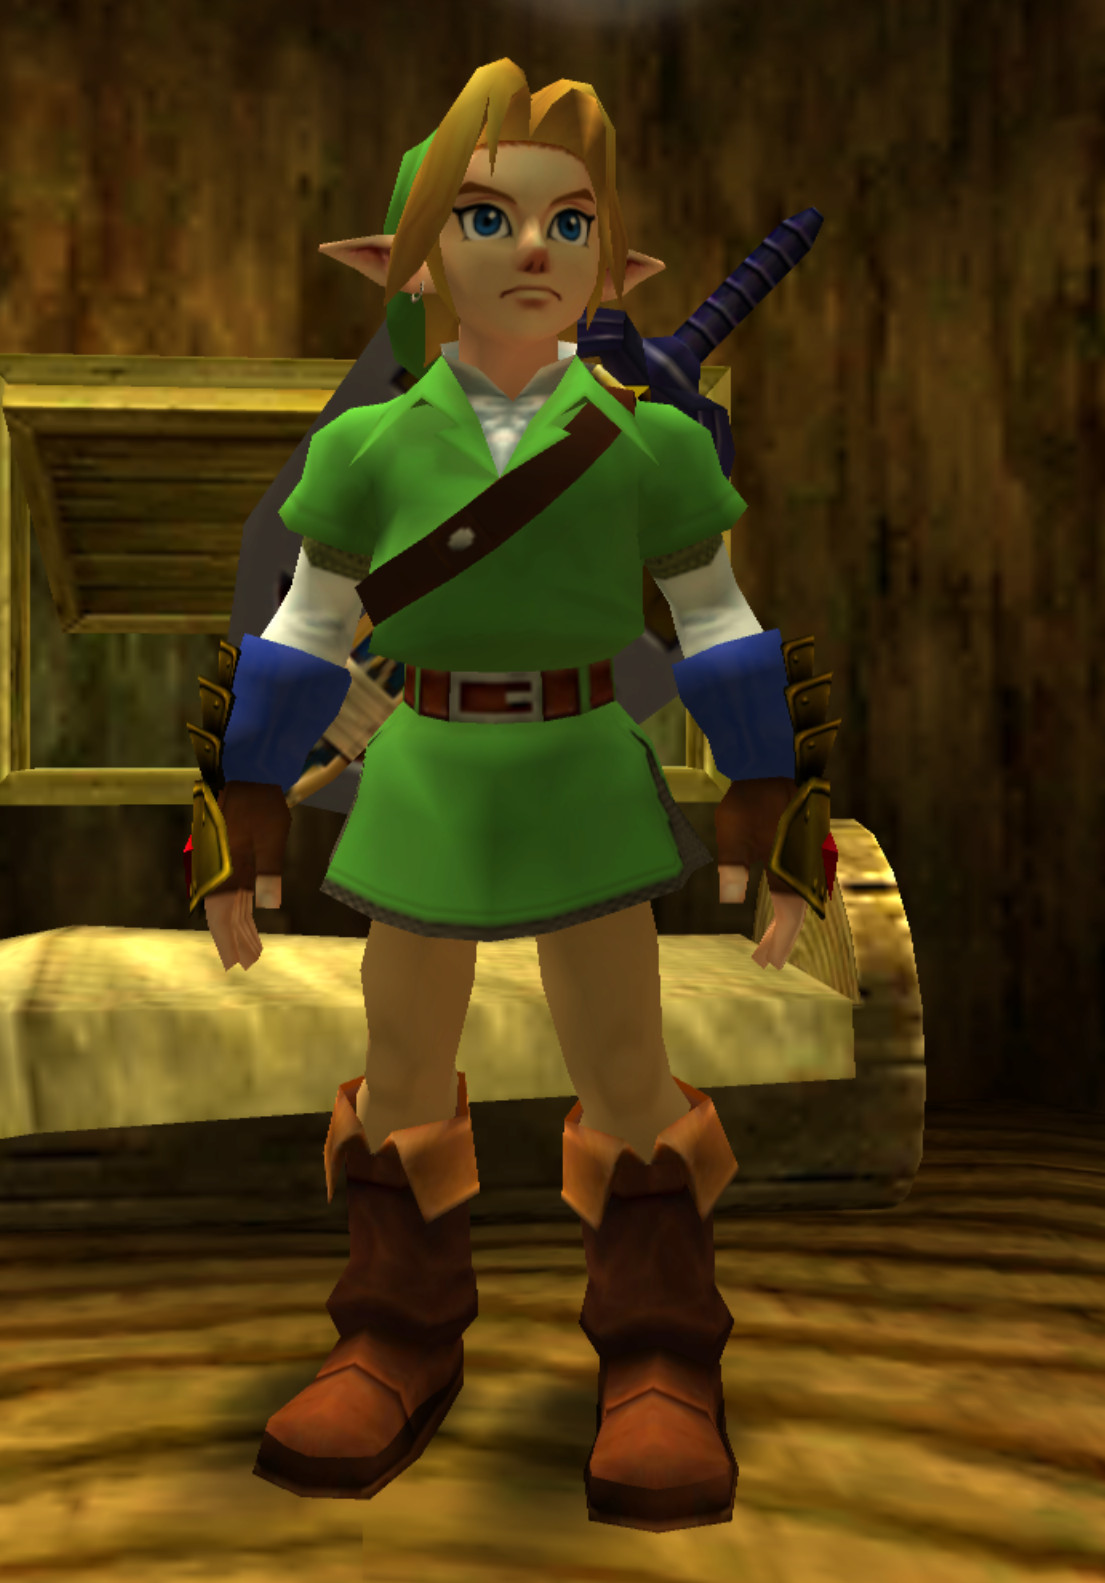 Soul calibur 2 style Link mod [The Legend of Zelda: Ocarina of Time 3D]  [Mods]